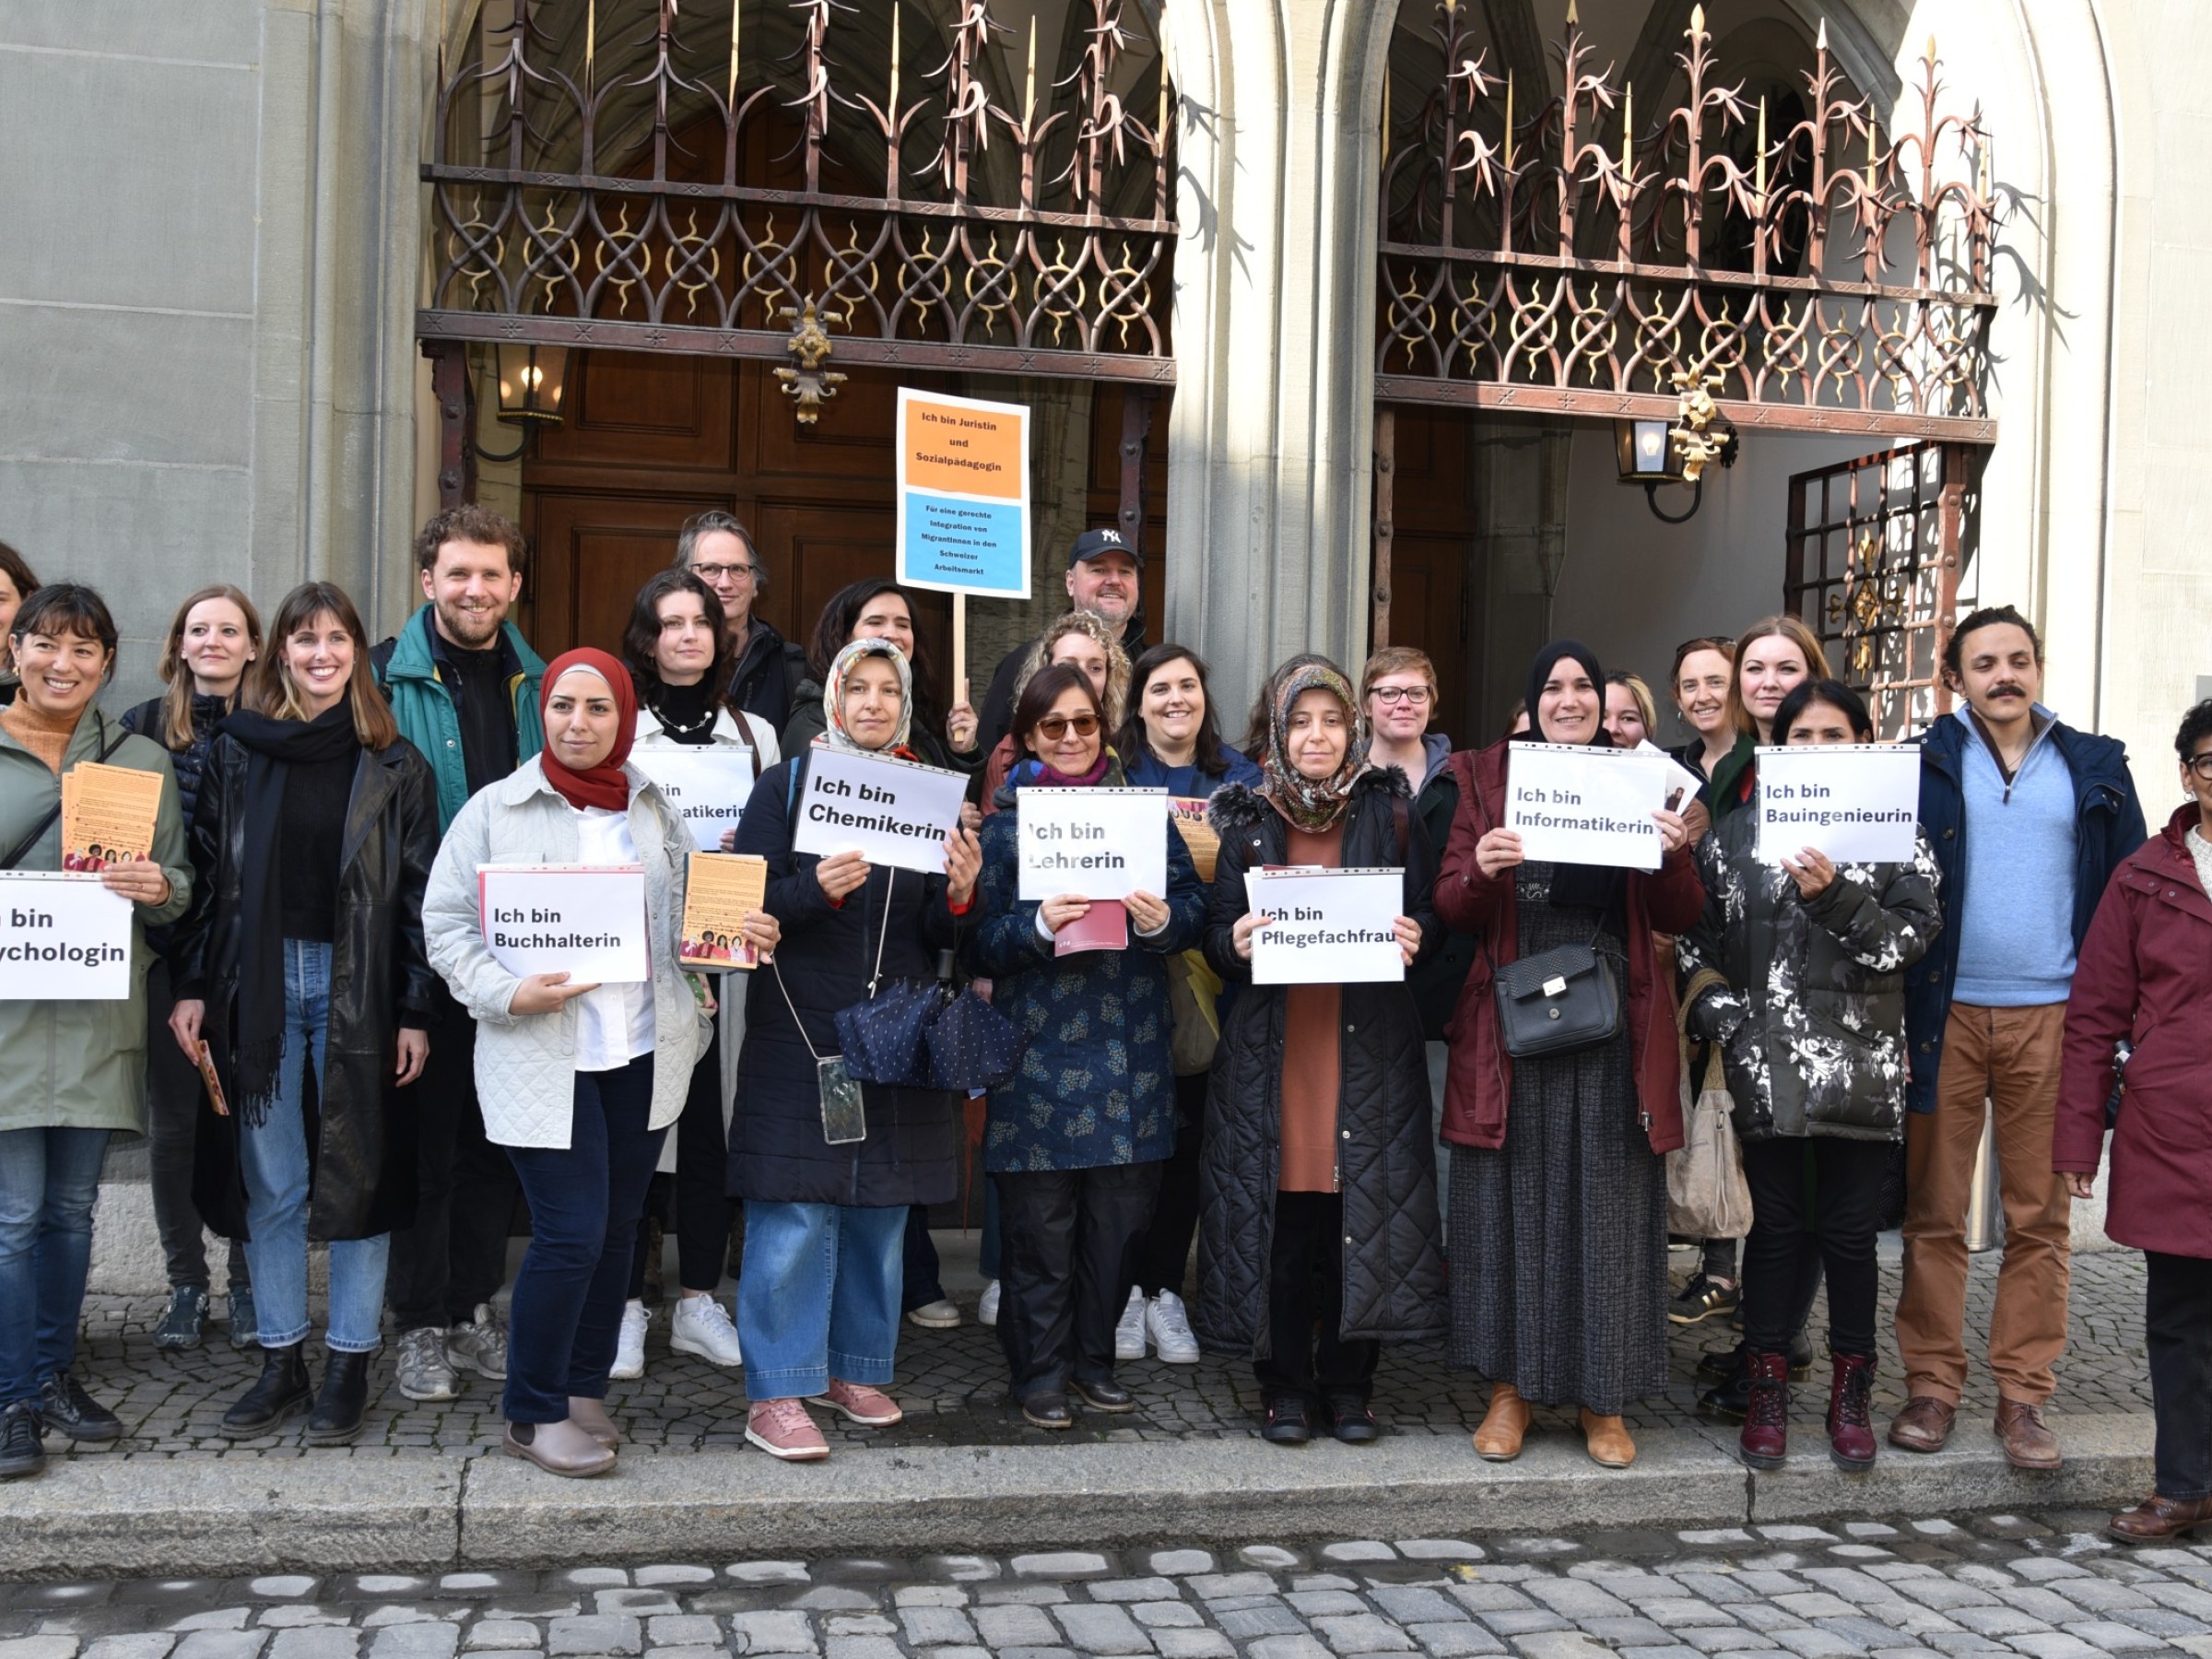 Frauen mit Migrationshintergrund halten Schilder mit Berufsbezeichnungen während einer Demo in Bern